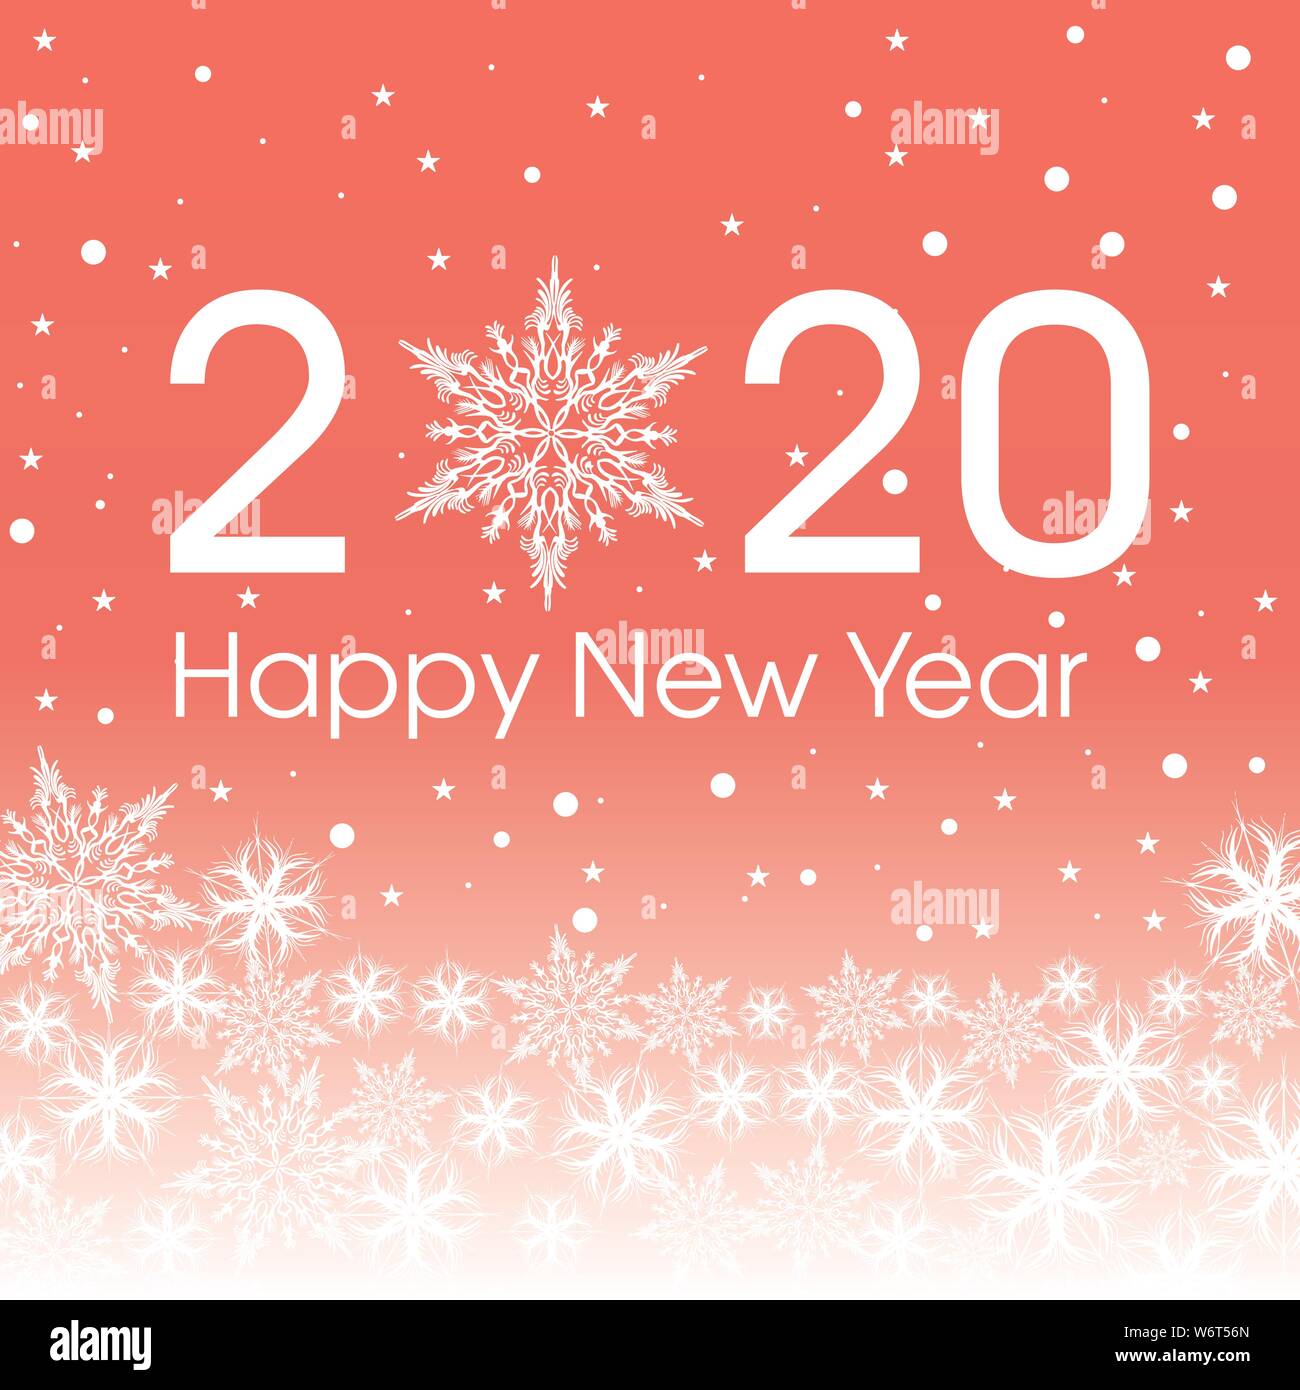 2020 Happy New Year Karte Vorlage. Design patern Schneeflocken weiss und rosa Farbe. Stock Vektor